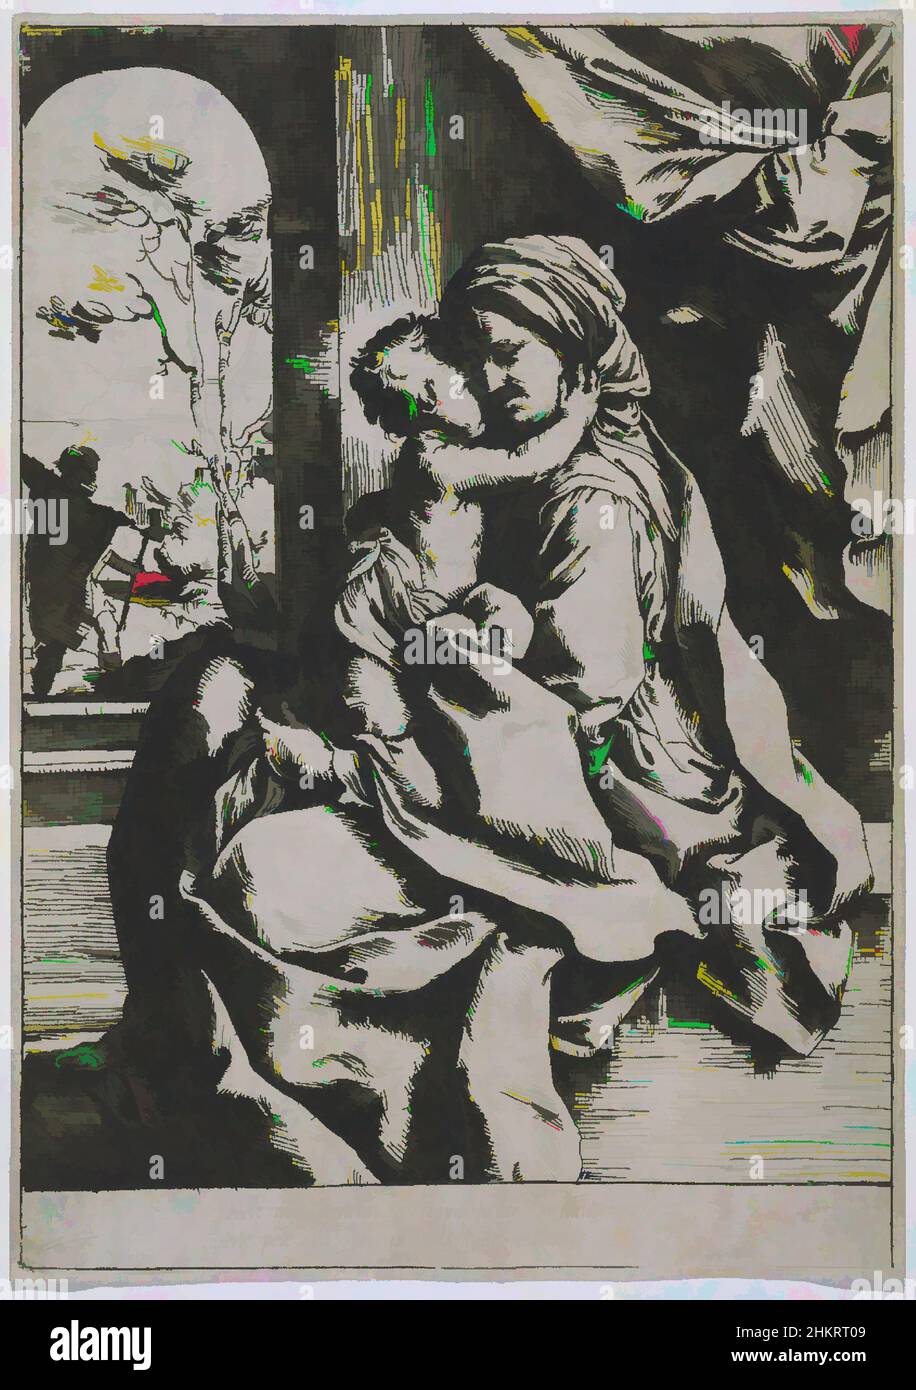 Kunst inspiriert von der Jungfrau sitzend mit dem Christkind, Guido Reni, 1600-1613, Radierung, Diese Radierung, Gezeichnet und gedruckt vom berühmten Bologneser Künstler Guido Reni (1575-1642), verkörpert er mit seiner kompositorischen Klarheit und stark religiösen Botschaft den frühen Barock. Es ist, Classic Works modernisiert von Artotop mit einem Schuss Moderne. Formen, Farbe und Wert, auffällige visuelle Wirkung auf Kunst. Emotionen durch Freiheit von Kunstwerken auf zeitgemäße Weise. Eine zeitlose Botschaft, die eine wild kreative neue Richtung verfolgt. Künstler, die sich dem digitalen Medium zuwenden und die Artotop NFT erschaffen Stockfoto